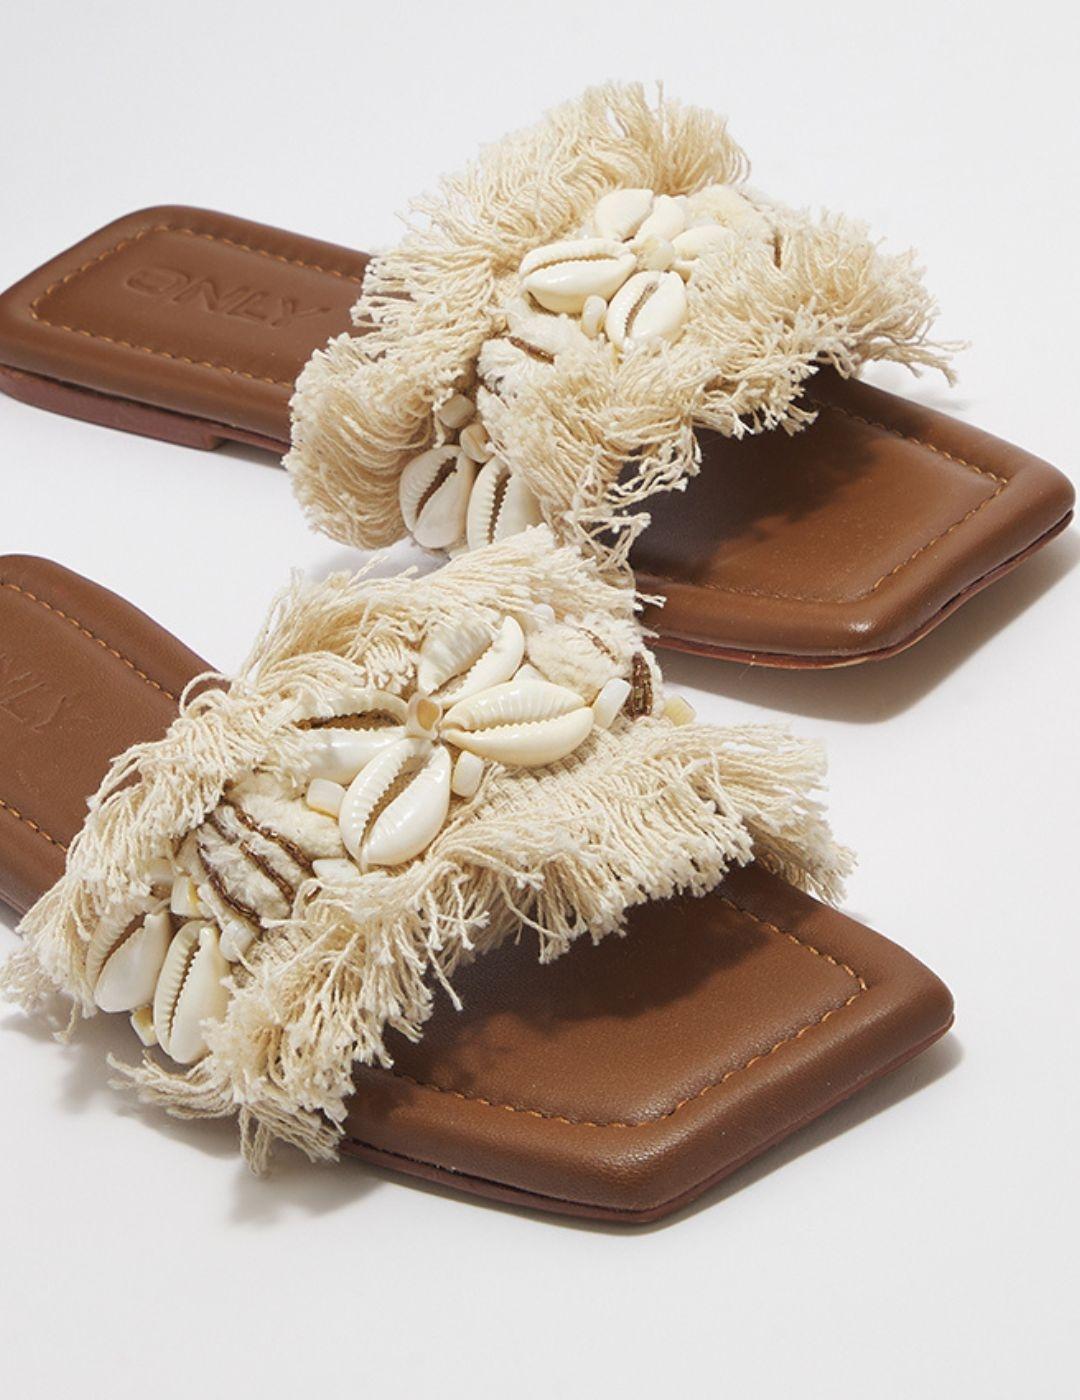 Sandalia plana color crema con flecos y conchas